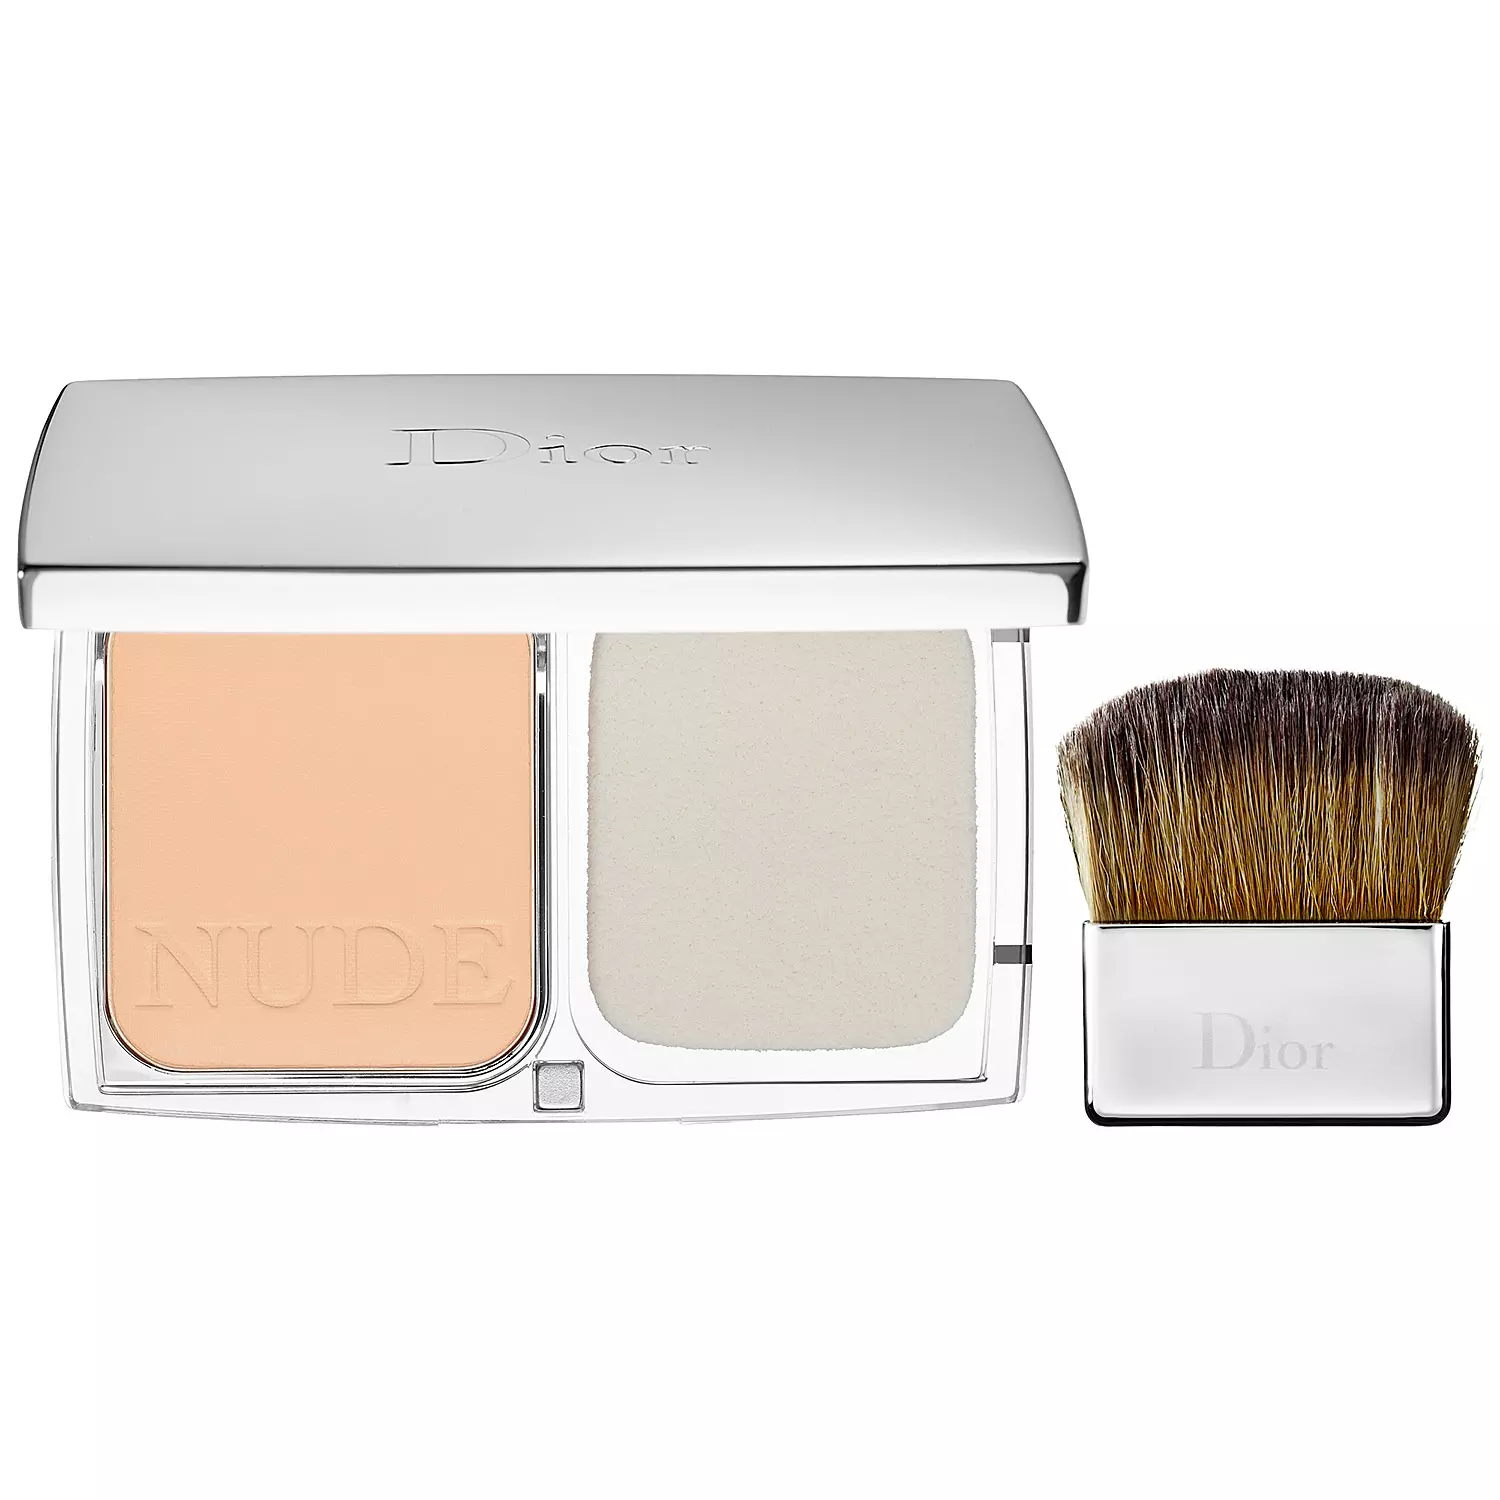 uitgebreid Uitpakken Relatie Dior Diorskin Nude Compact Powder Makeup 020 Light Beige | Glambot.com -  Best deals on Dior cosmetics